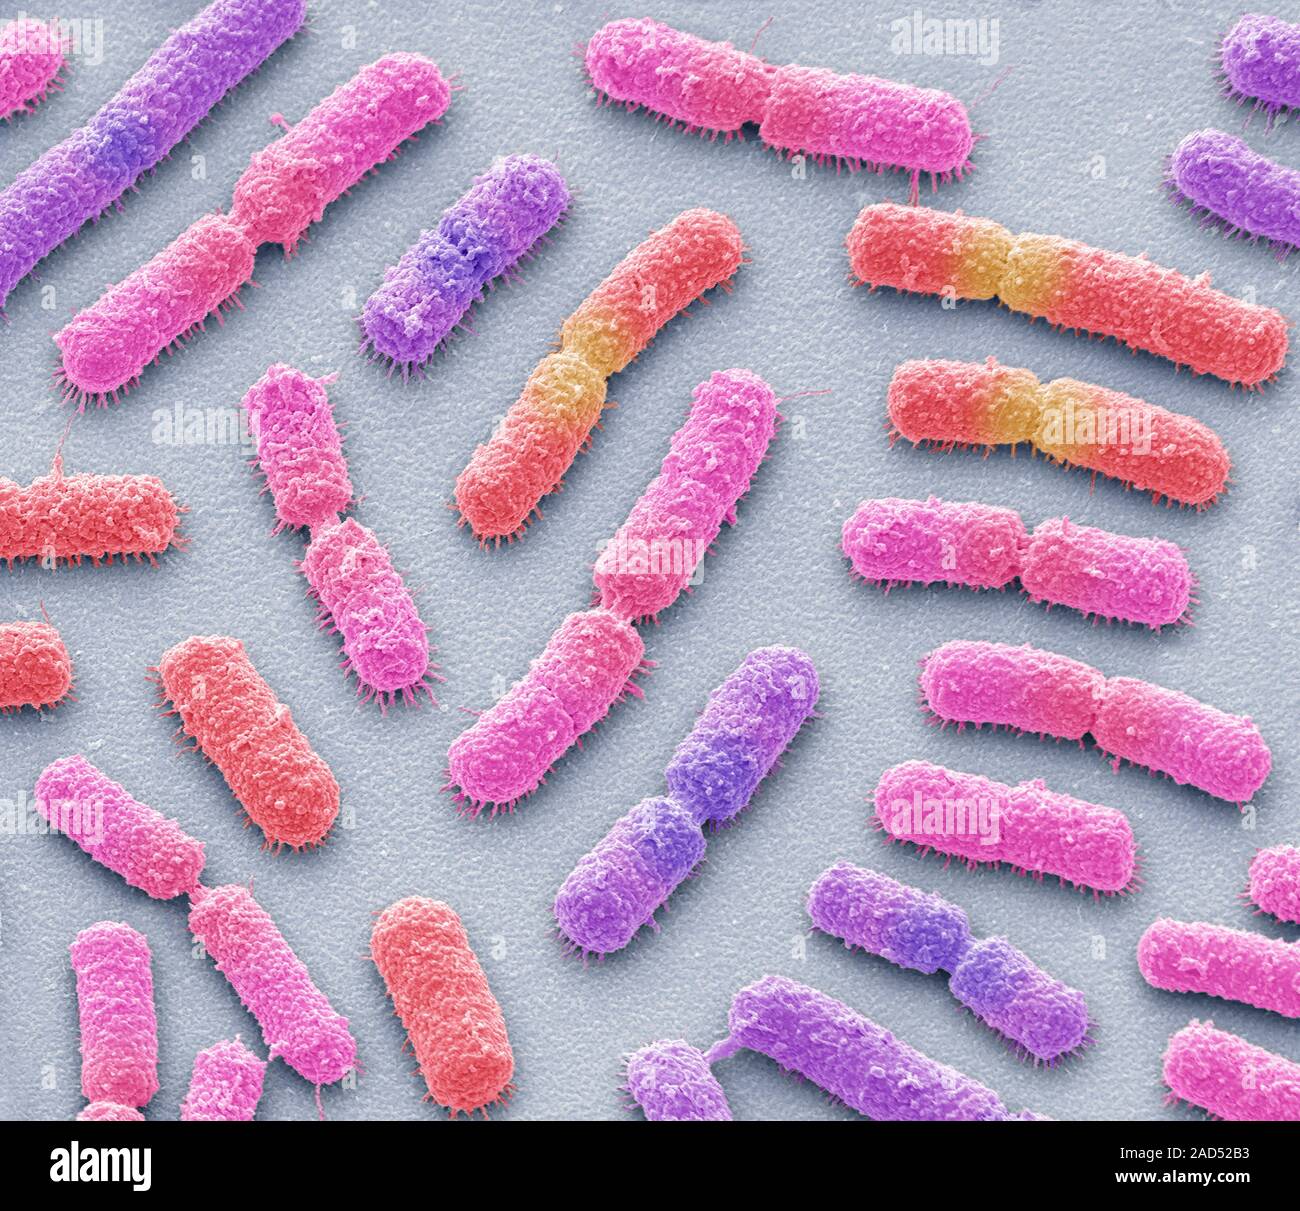 Bacillus megaterium colonia batterica, colorata di microfotografia electron  scansione (SEM). Questo astiformi di batteri Gram positivi si trova nel  suolo. Si tratta di una Foto stock - Alamy